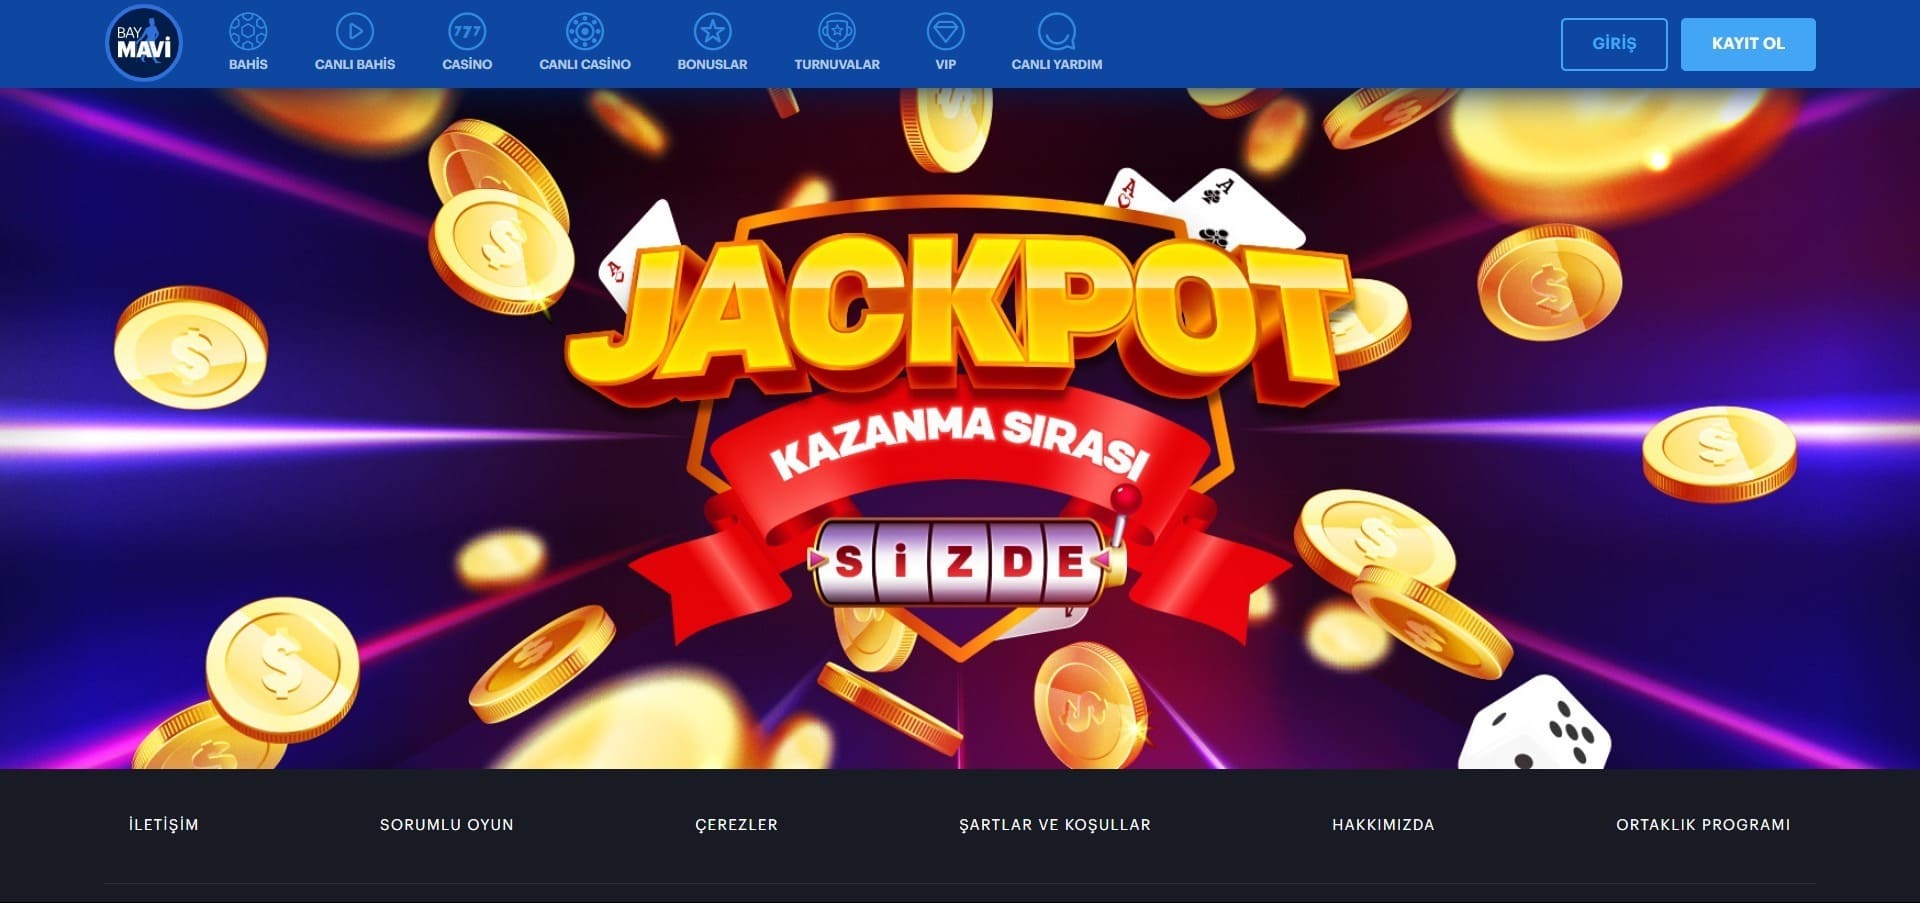 BayMavi Casino'nun resmi web sitesi